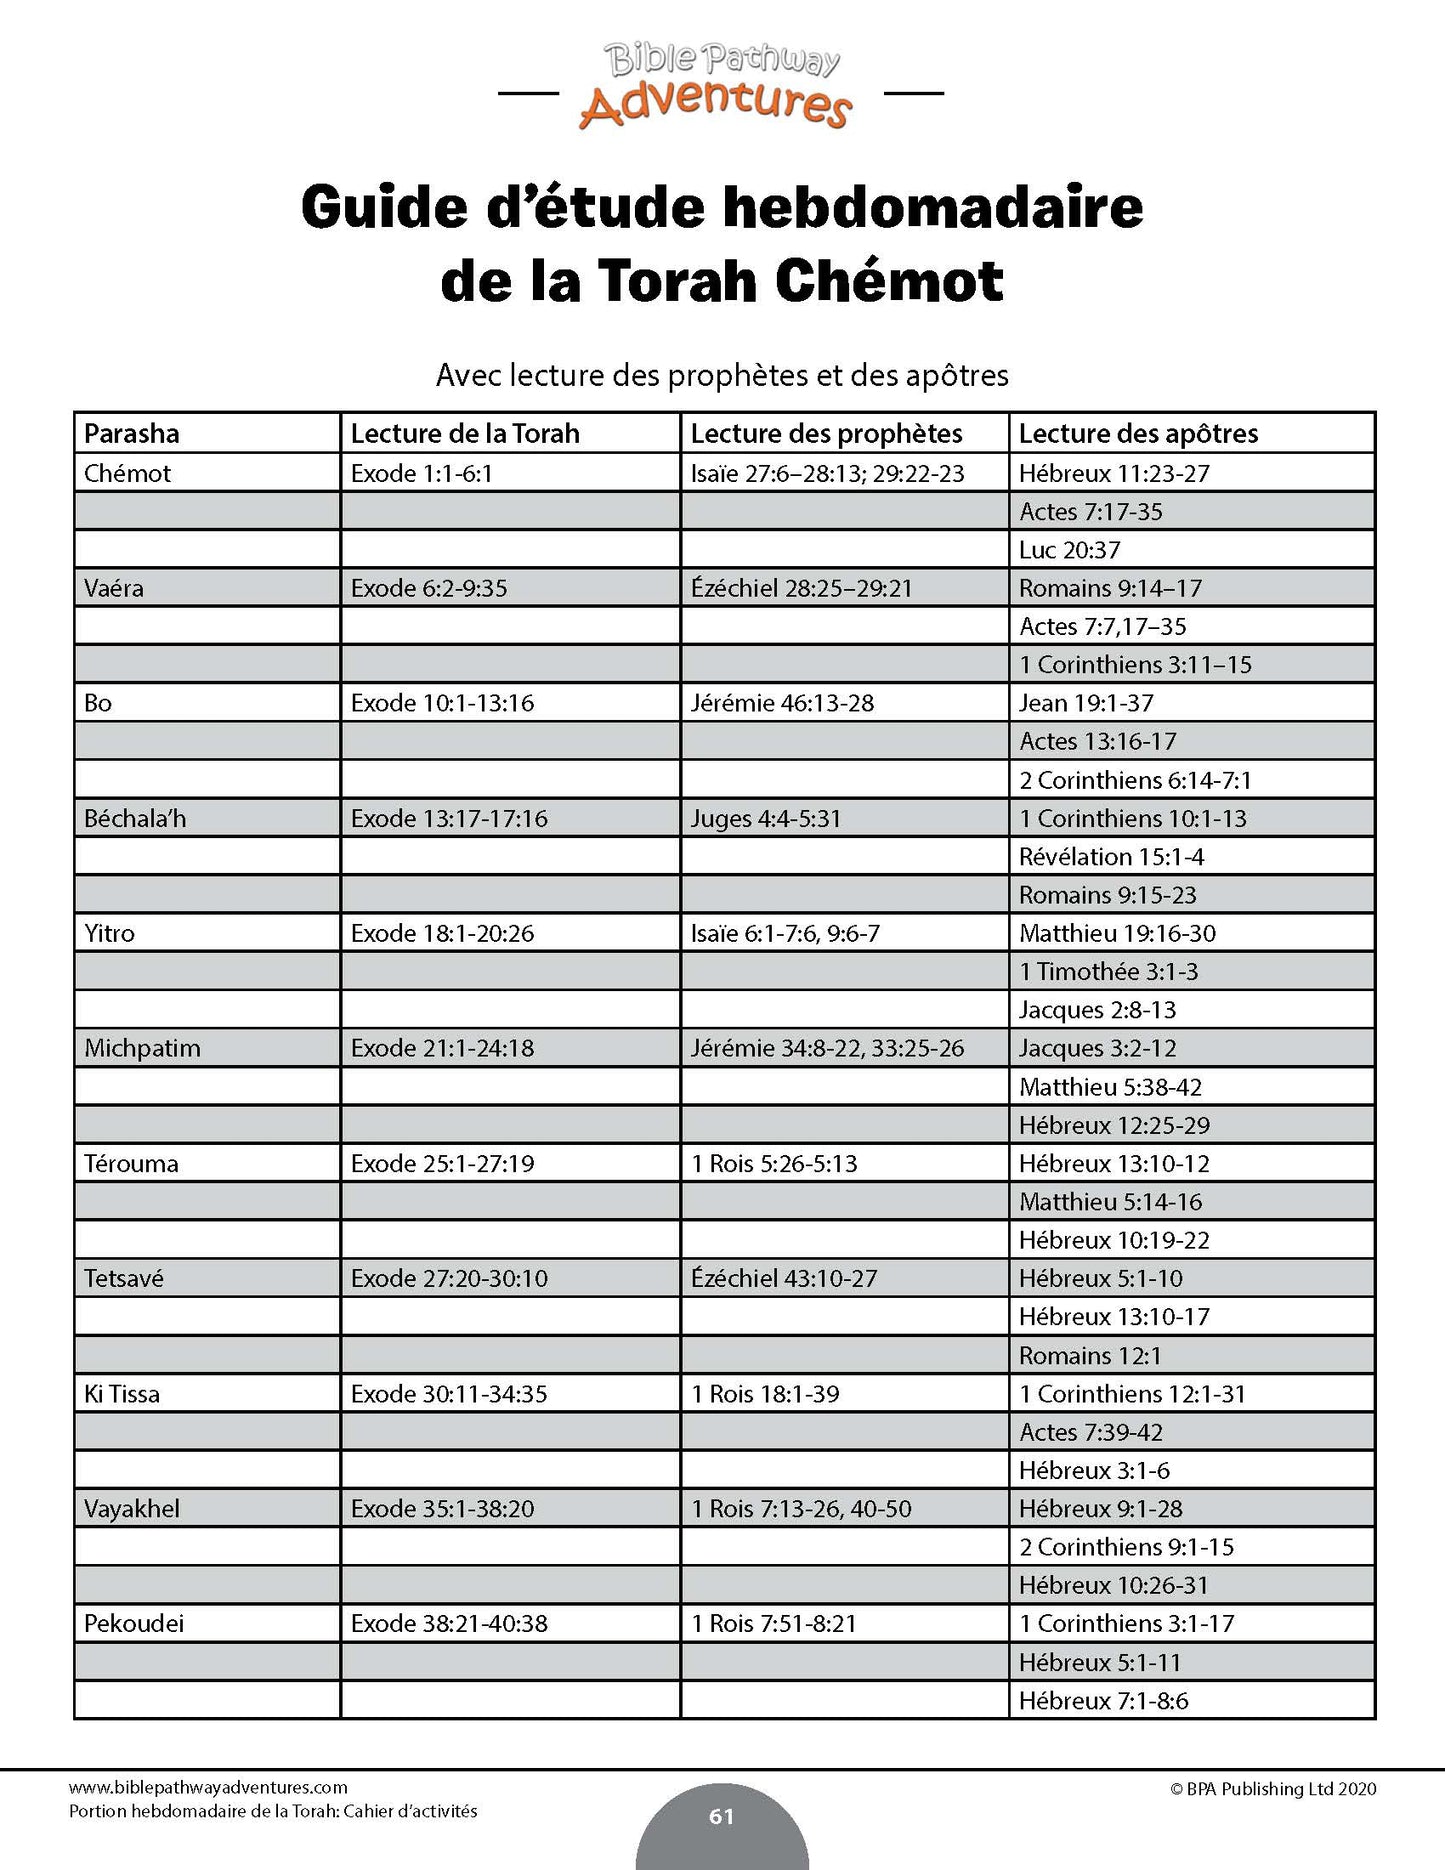 Portion hebdomadaire de la Torah Cahier d’activités